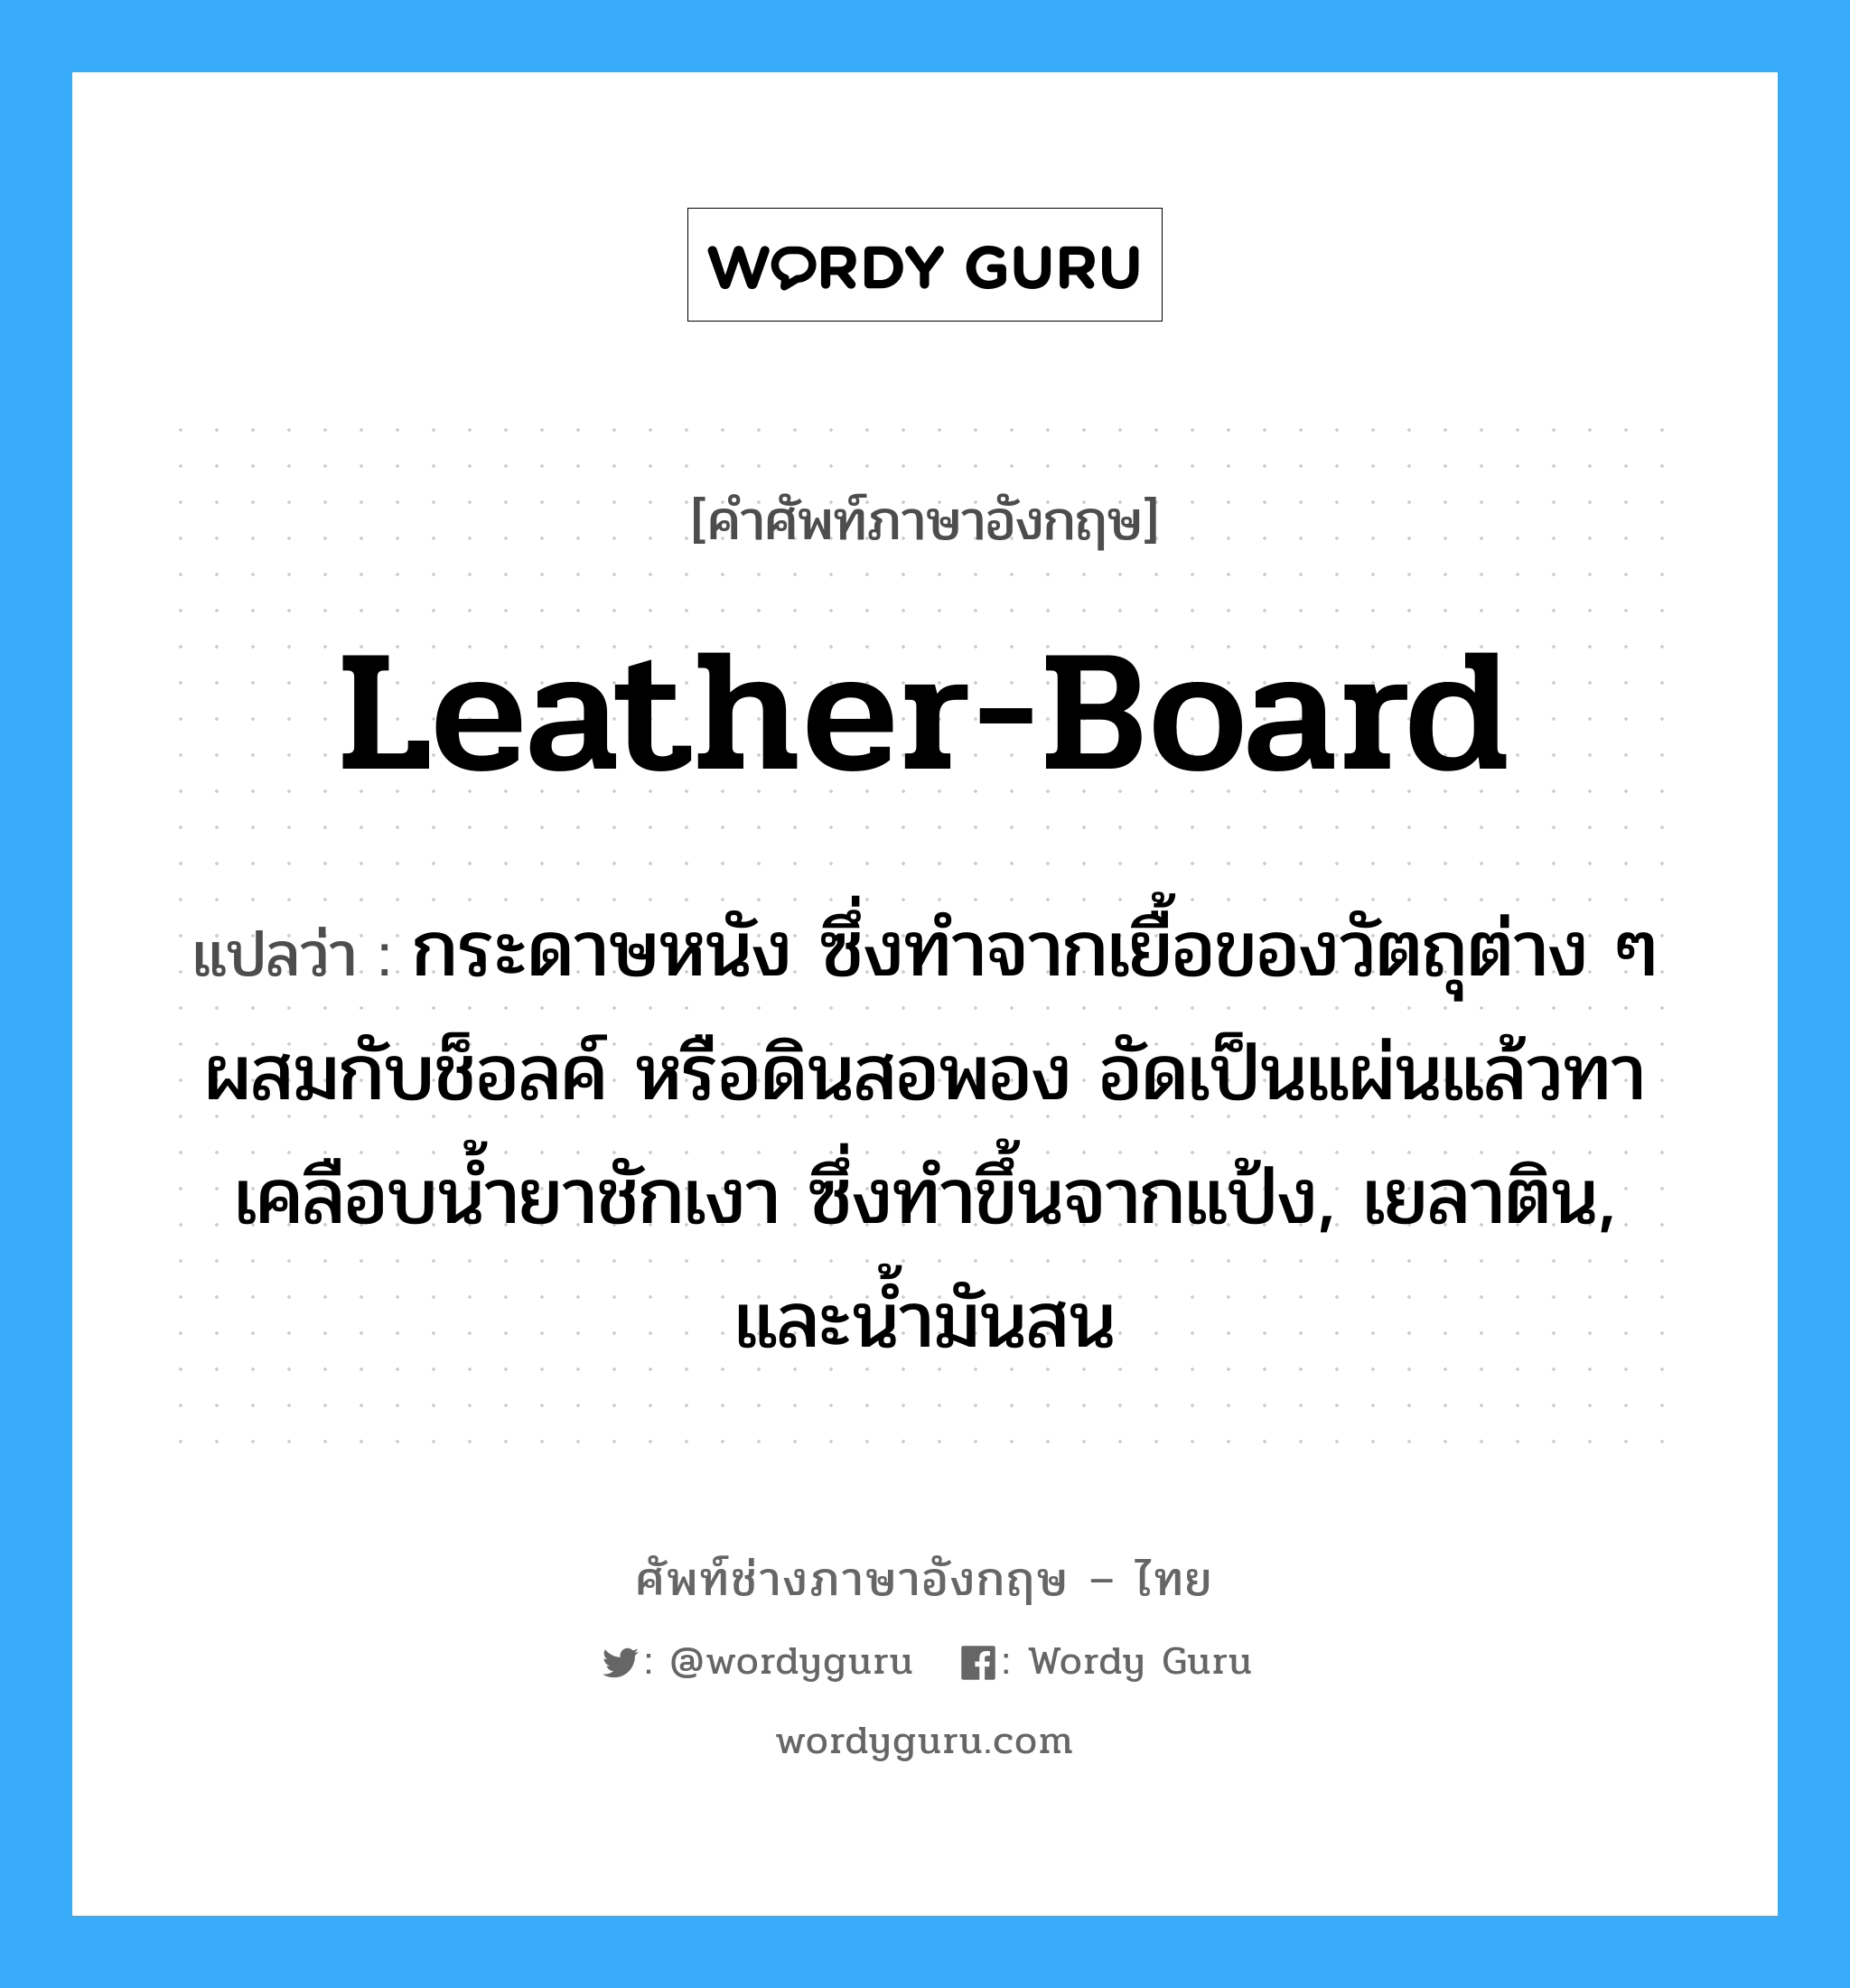 leather-board แปลว่า?, คำศัพท์ช่างภาษาอังกฤษ - ไทย leather-board คำศัพท์ภาษาอังกฤษ leather-board แปลว่า กระดาษหนัง ซึ่งทำจากเยื้อของวัตถุต่าง ๆ ผสมกับช็อลค์ หรือดินสอพอง อัดเป็นแผ่นแล้วทาเคลือบน้ำยาชักเงา ซึ่งทำขึ้นจากแป้ง, เยลาติน, และน้ำมันสน